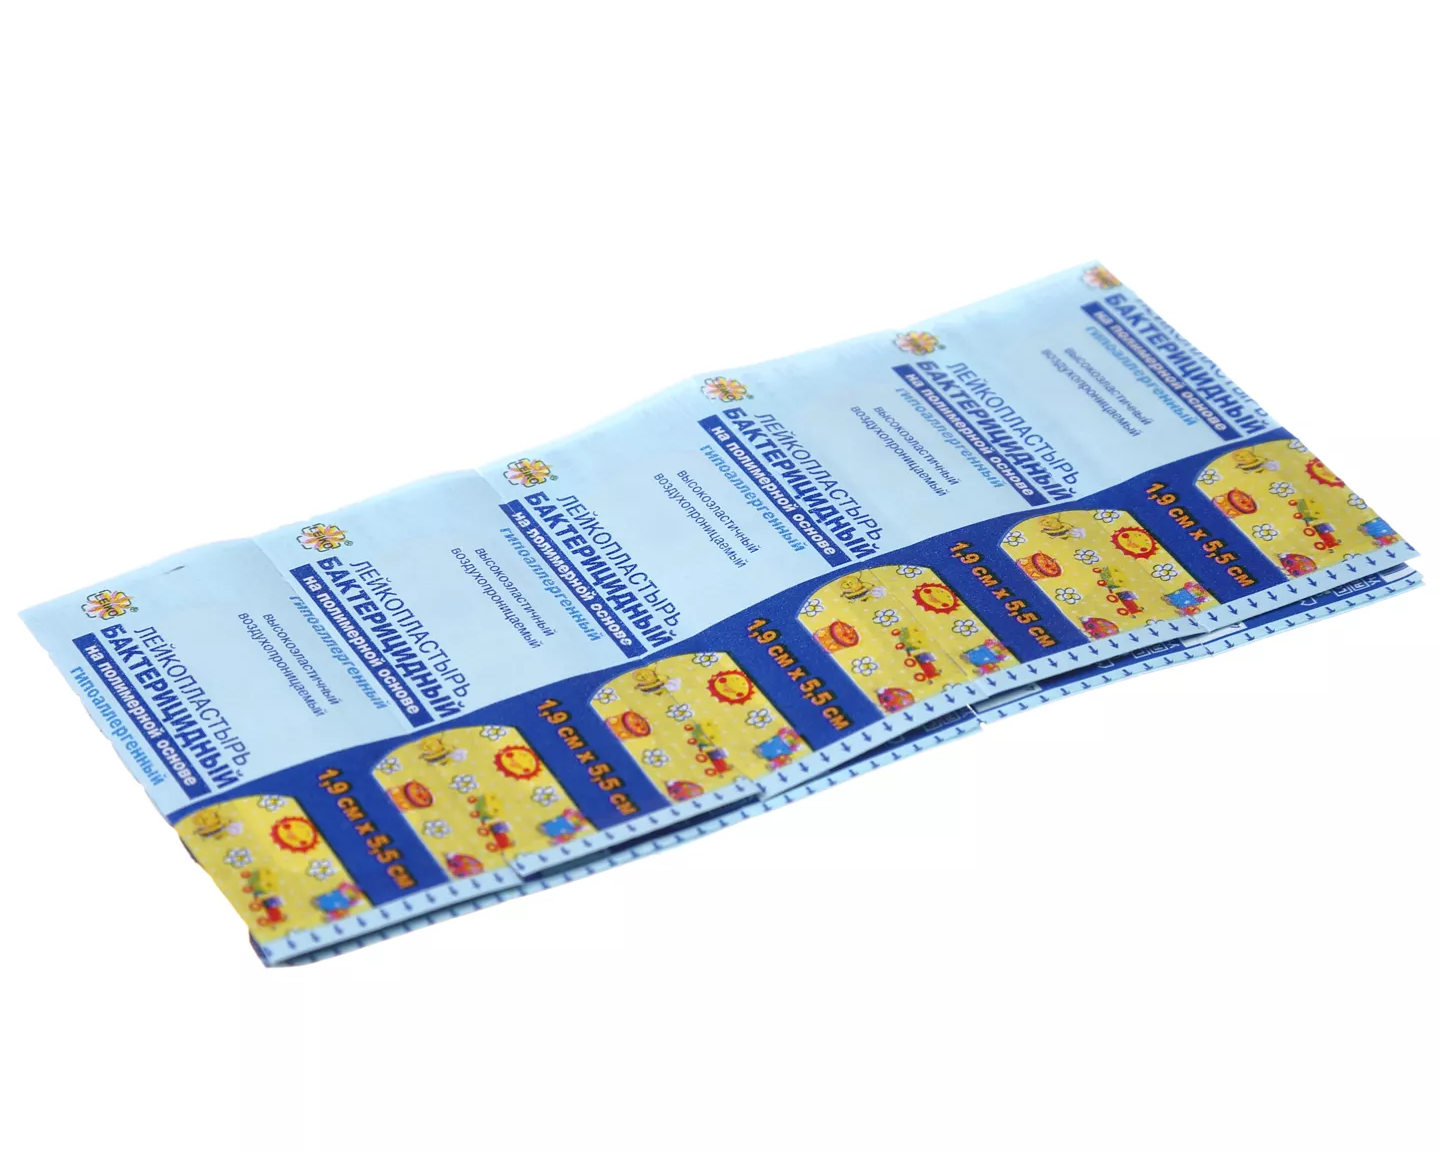 Лейкопластырь LEIKO бактерицидный, размер 1,9см*5,5см, с рисунком, на полимерной основе, гипоаллергенный, индивидуальная упаковка